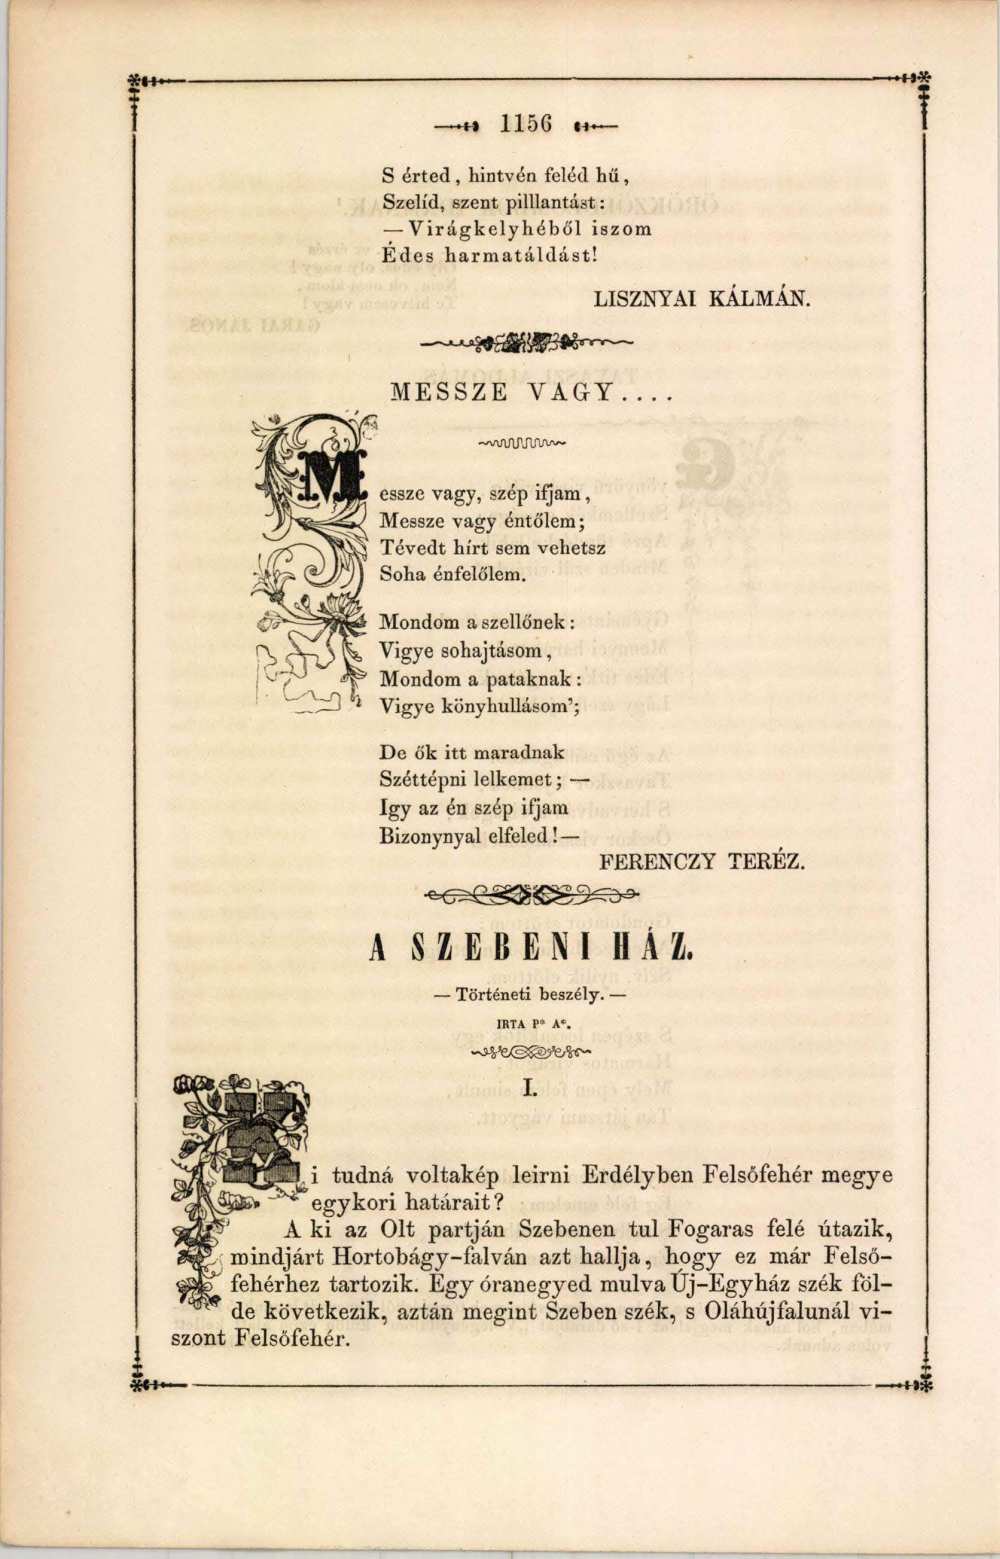 Ferenczy Teréz: Messze vagy… című verse. In: Divatcsarnok, 58. sz. (1853. október 20.), 1156. – Törzsgyűjtemény https://nektar.oszk.hu/hu/manifestation/1023289